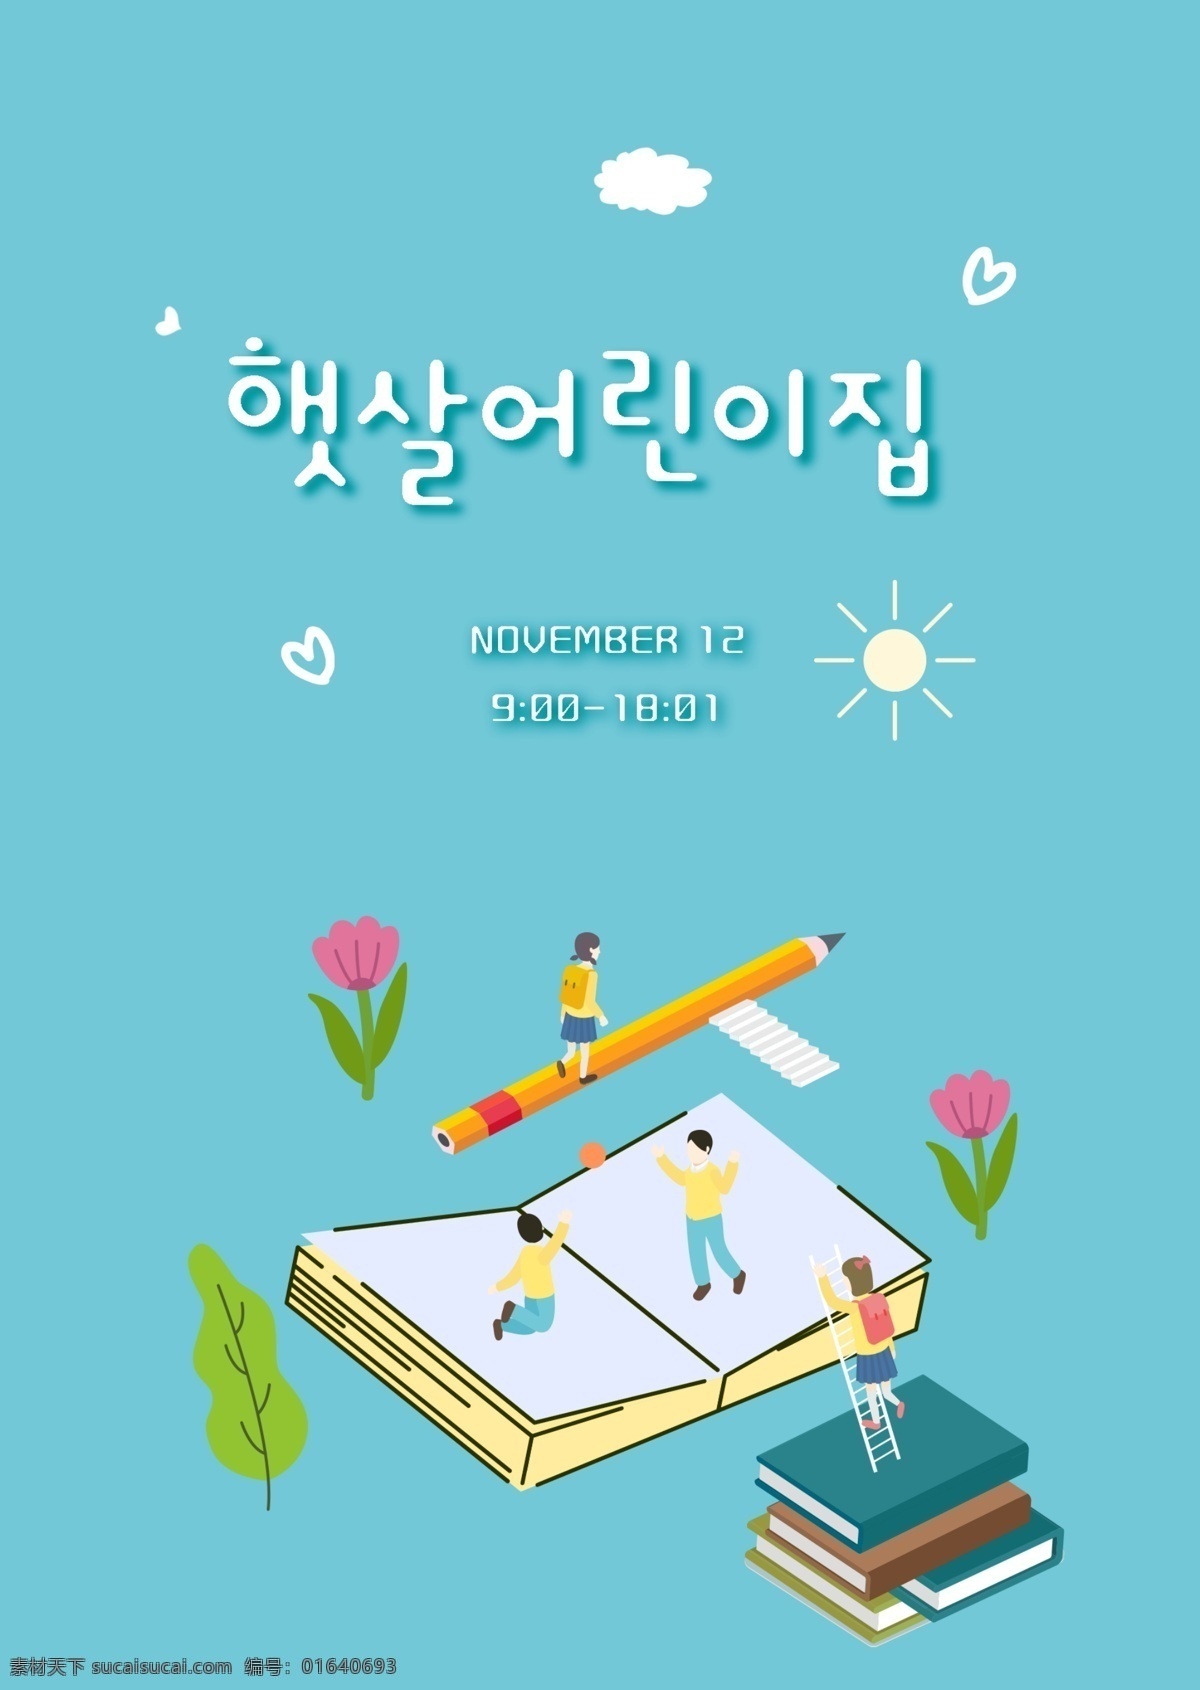 韩国 蓝色 新鲜 儿童 生活 教育 海报 云 动画片 阶梯 手工制作 这本书 学校 学生们 韩国风格 铅笔 教学工具 文具 楼梯 非常 喜欢 男学生 女学生 运动